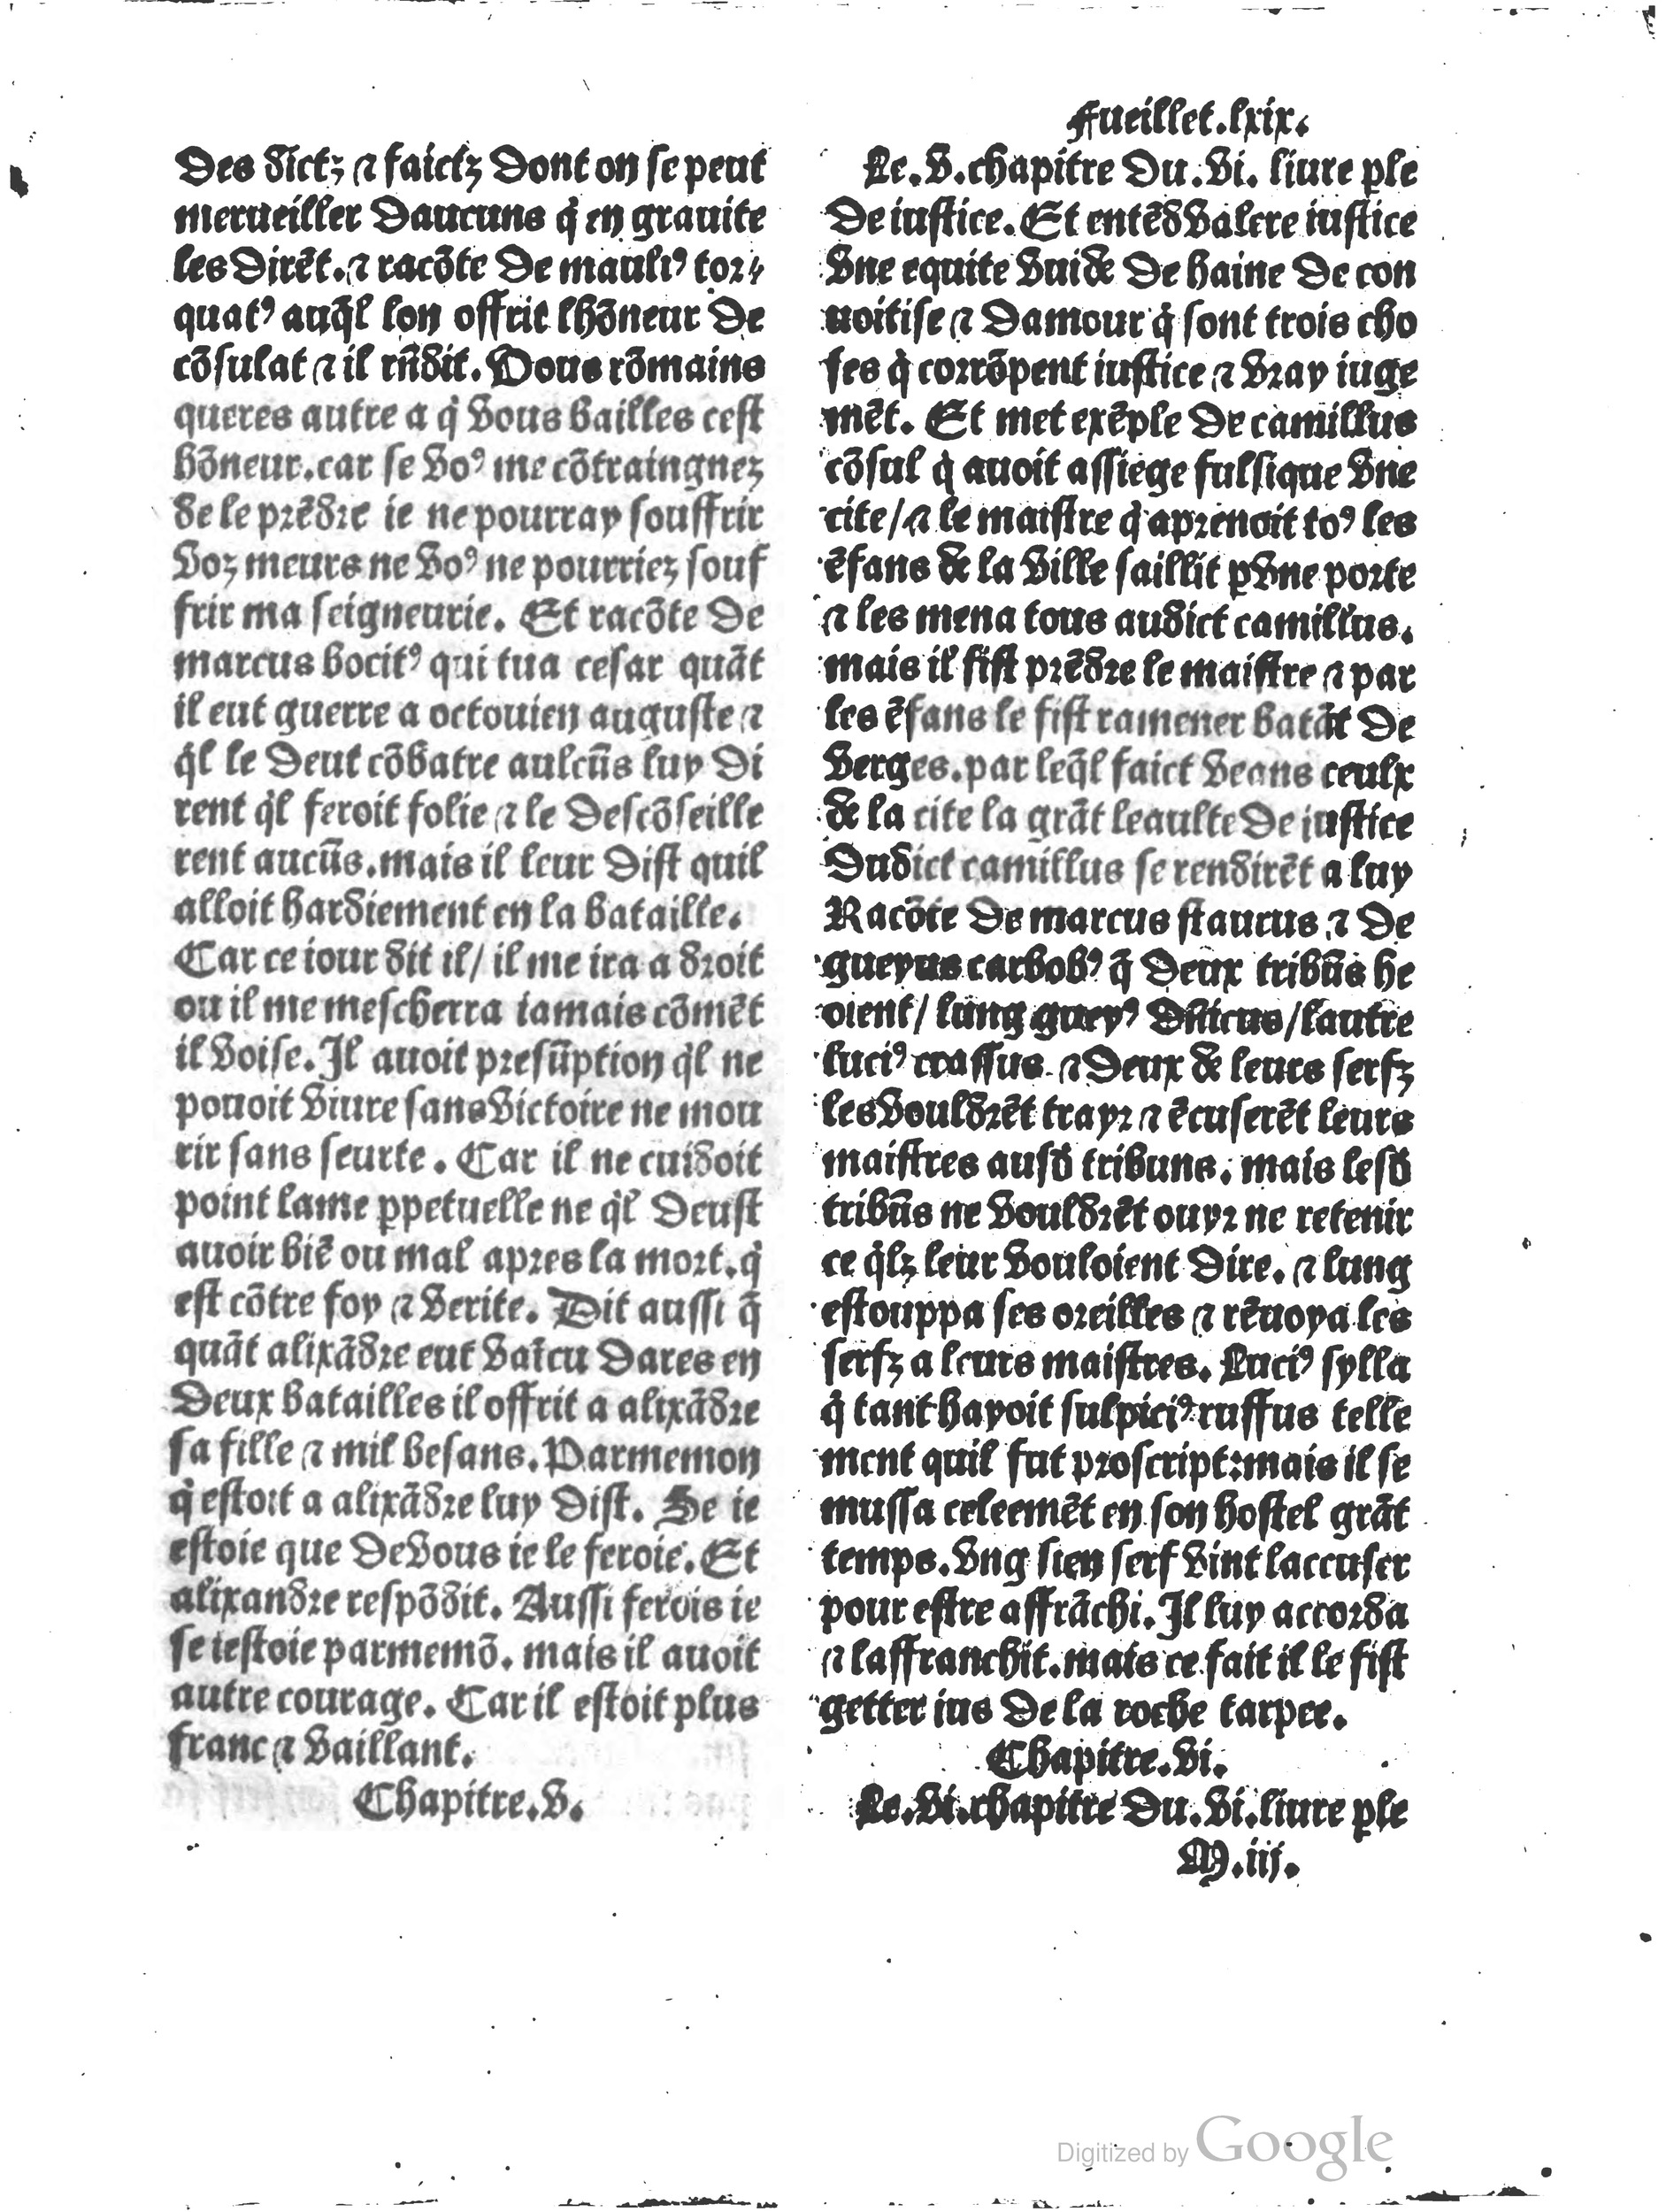 1497 Trésor de noblesse Vérard_BM Lyon_Page_151.jpg